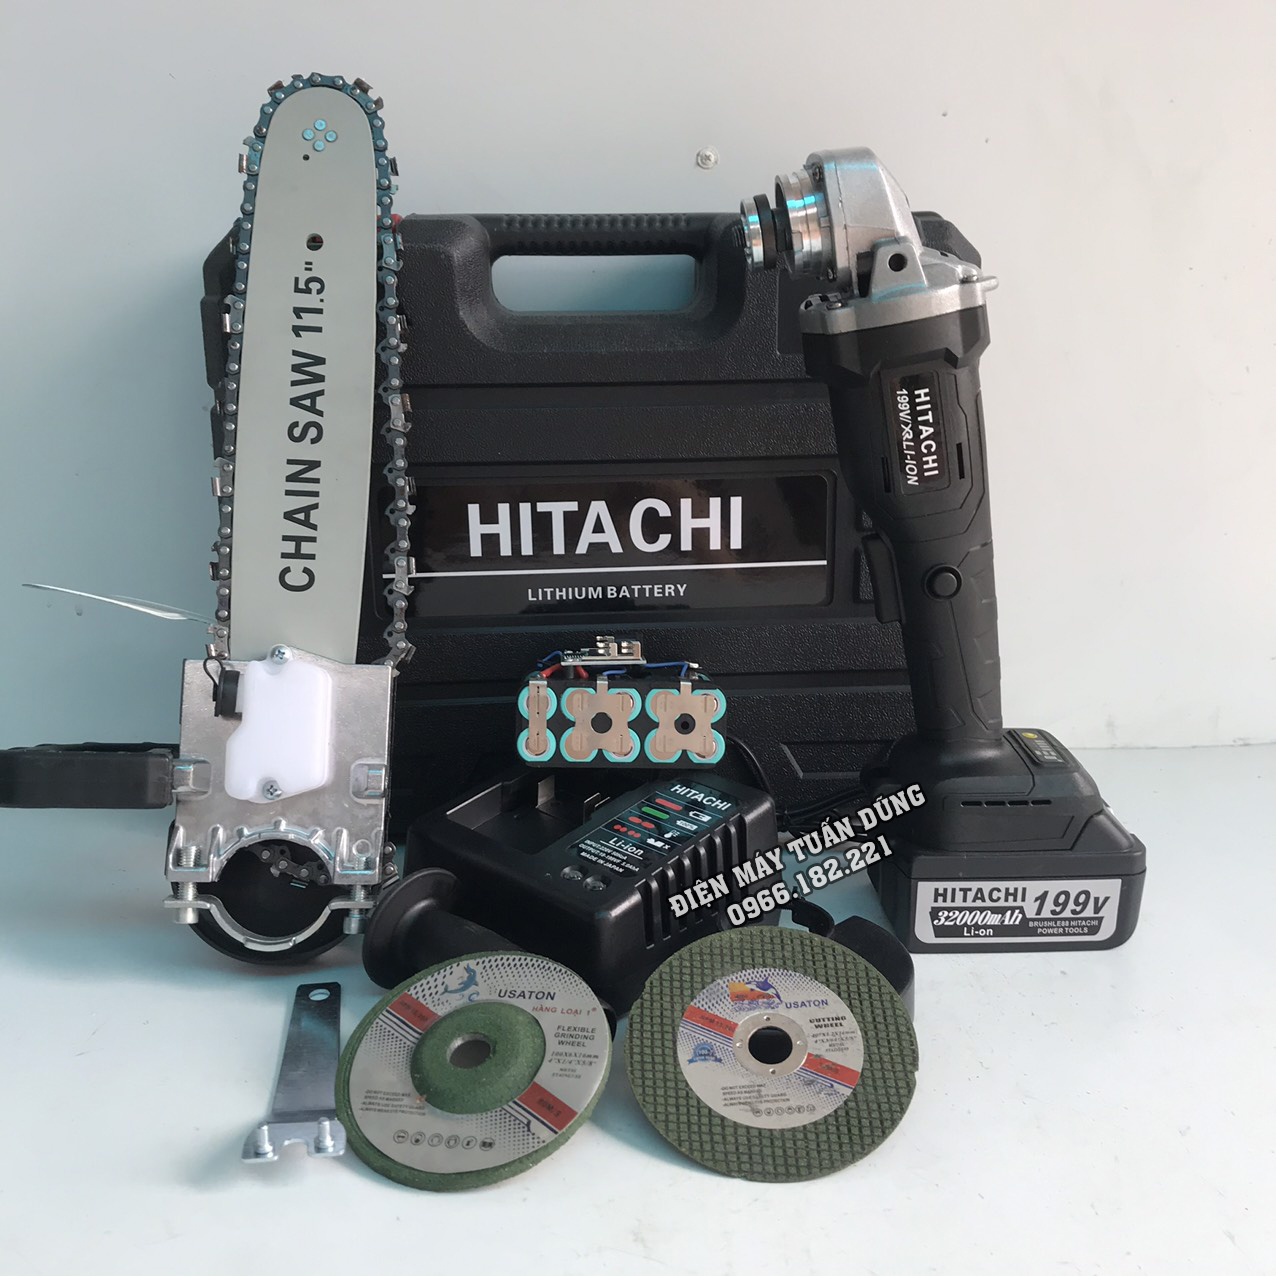 Máy mài dùng pin Hitachi 199V Động cơ không chổi than Kèm bộ lưỡi cưa xích